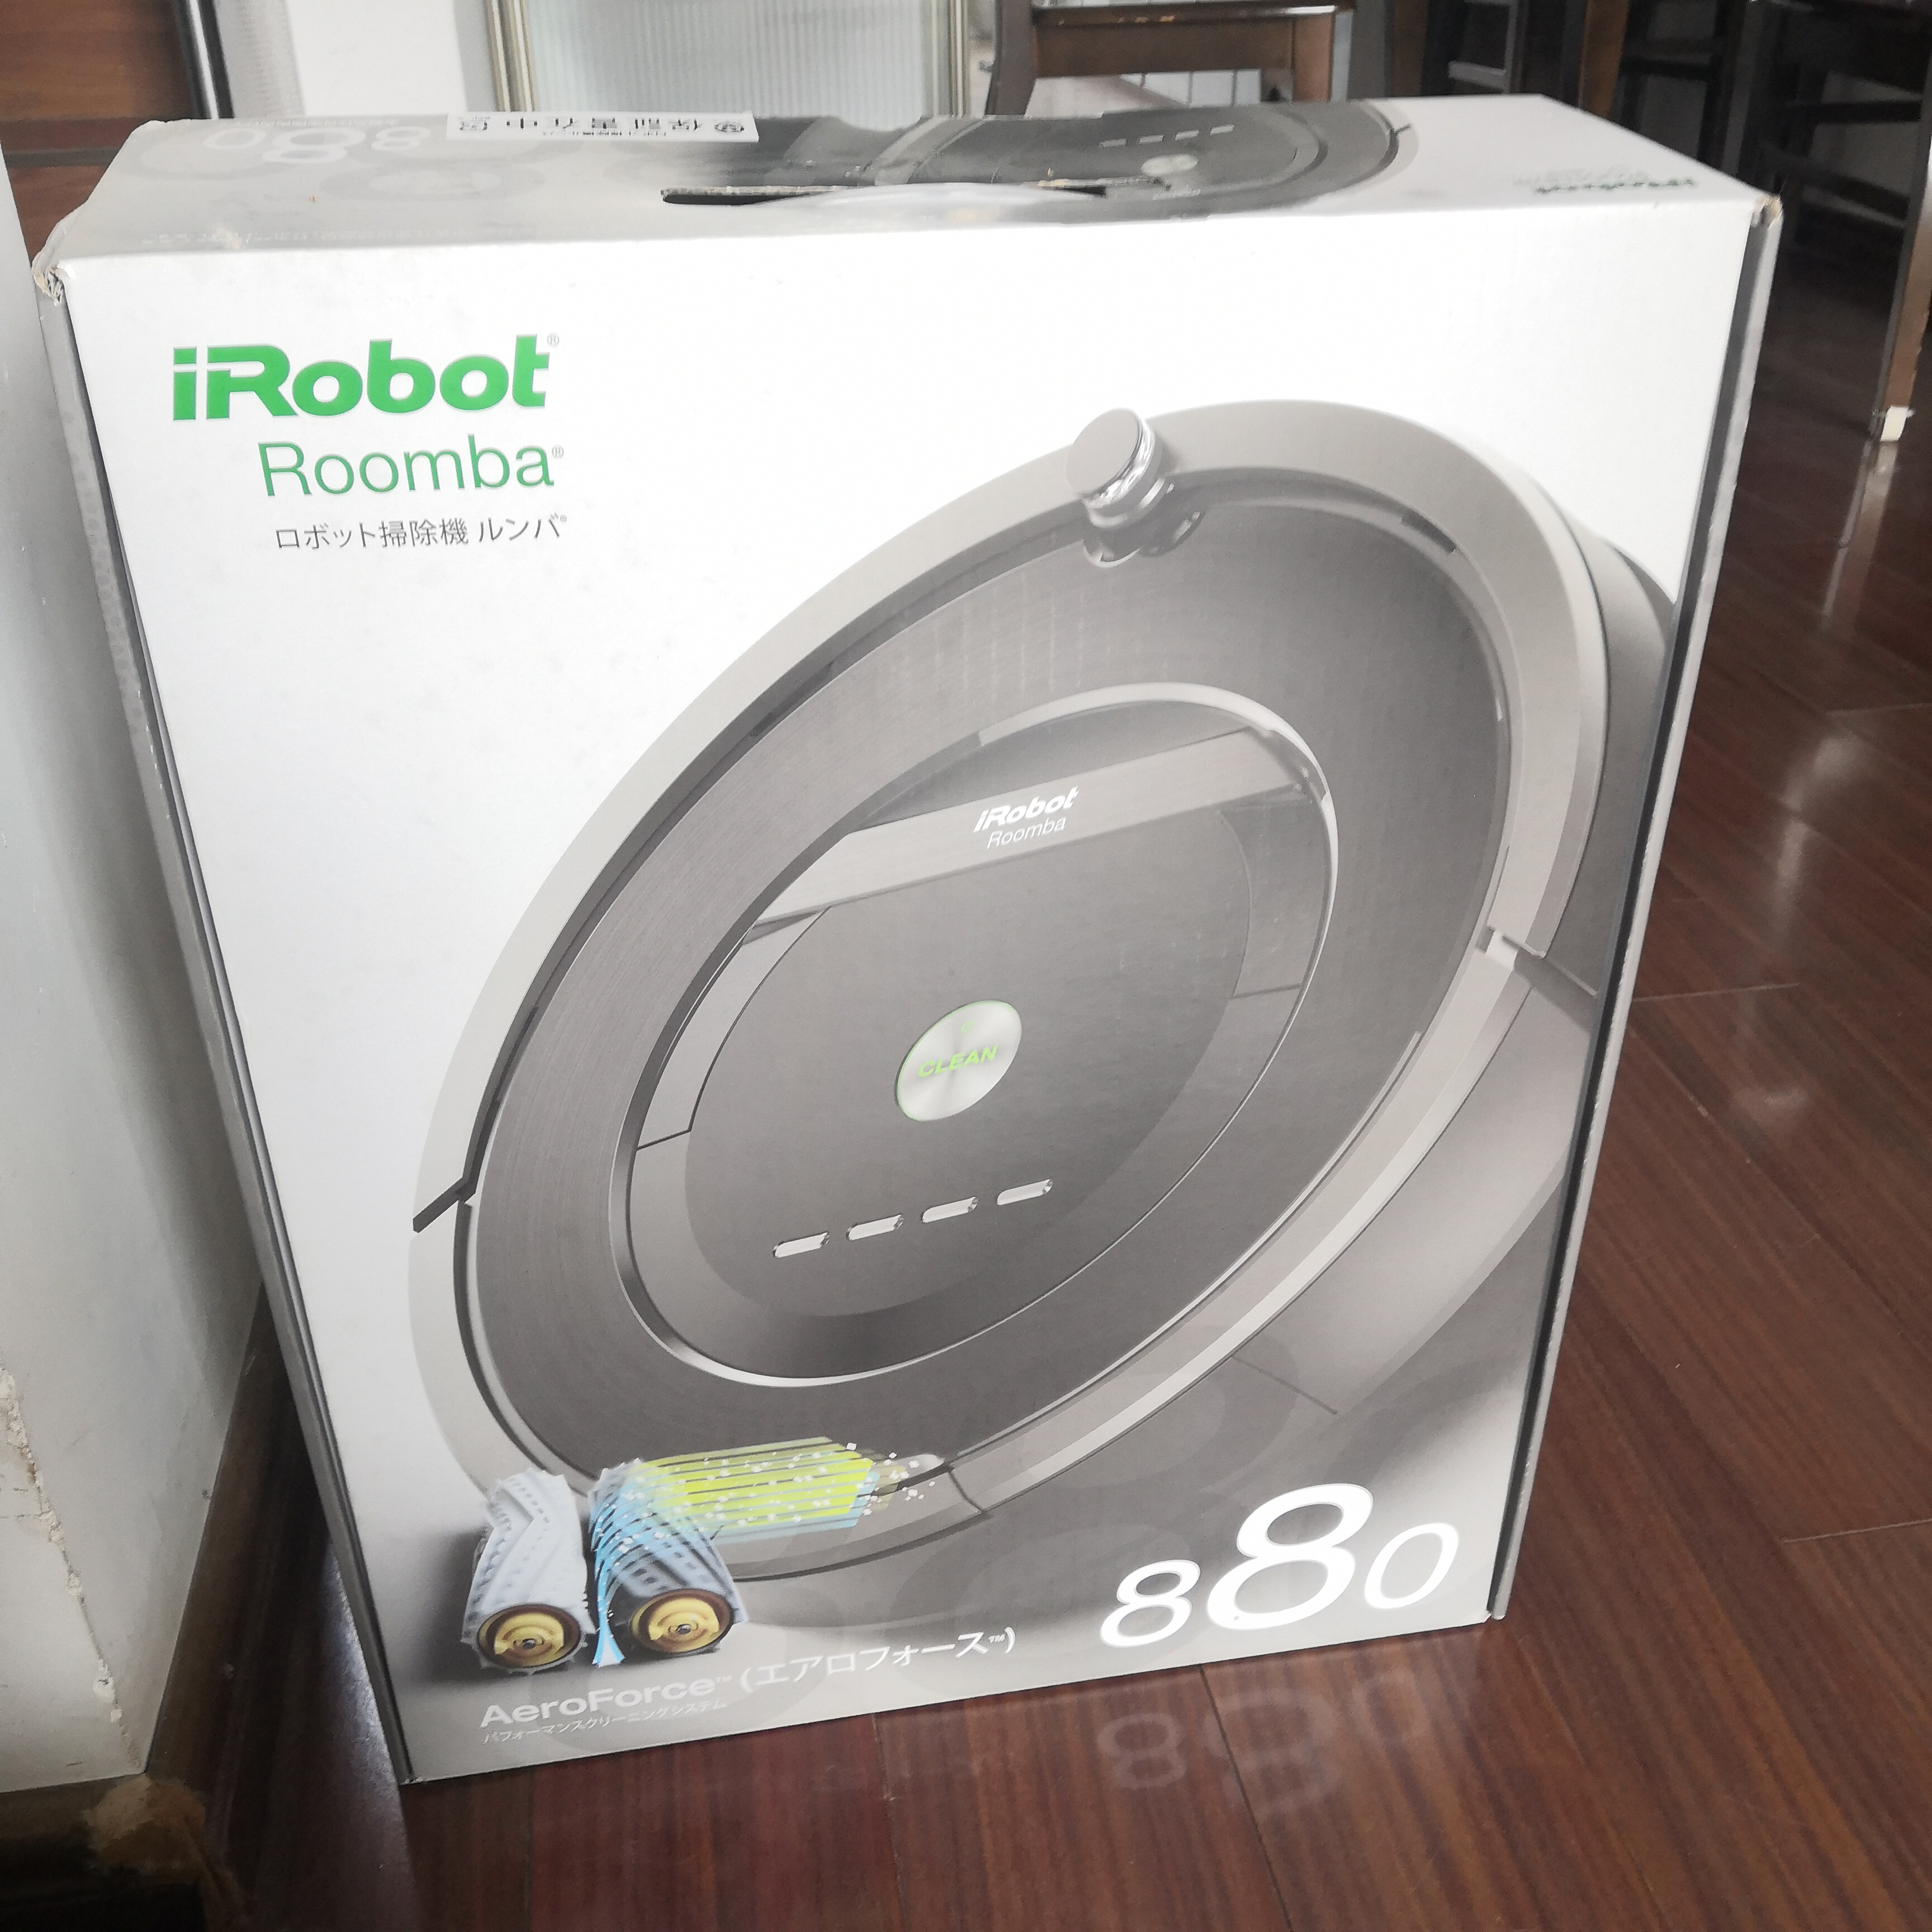 八成新irobot扫地机器人出售_1